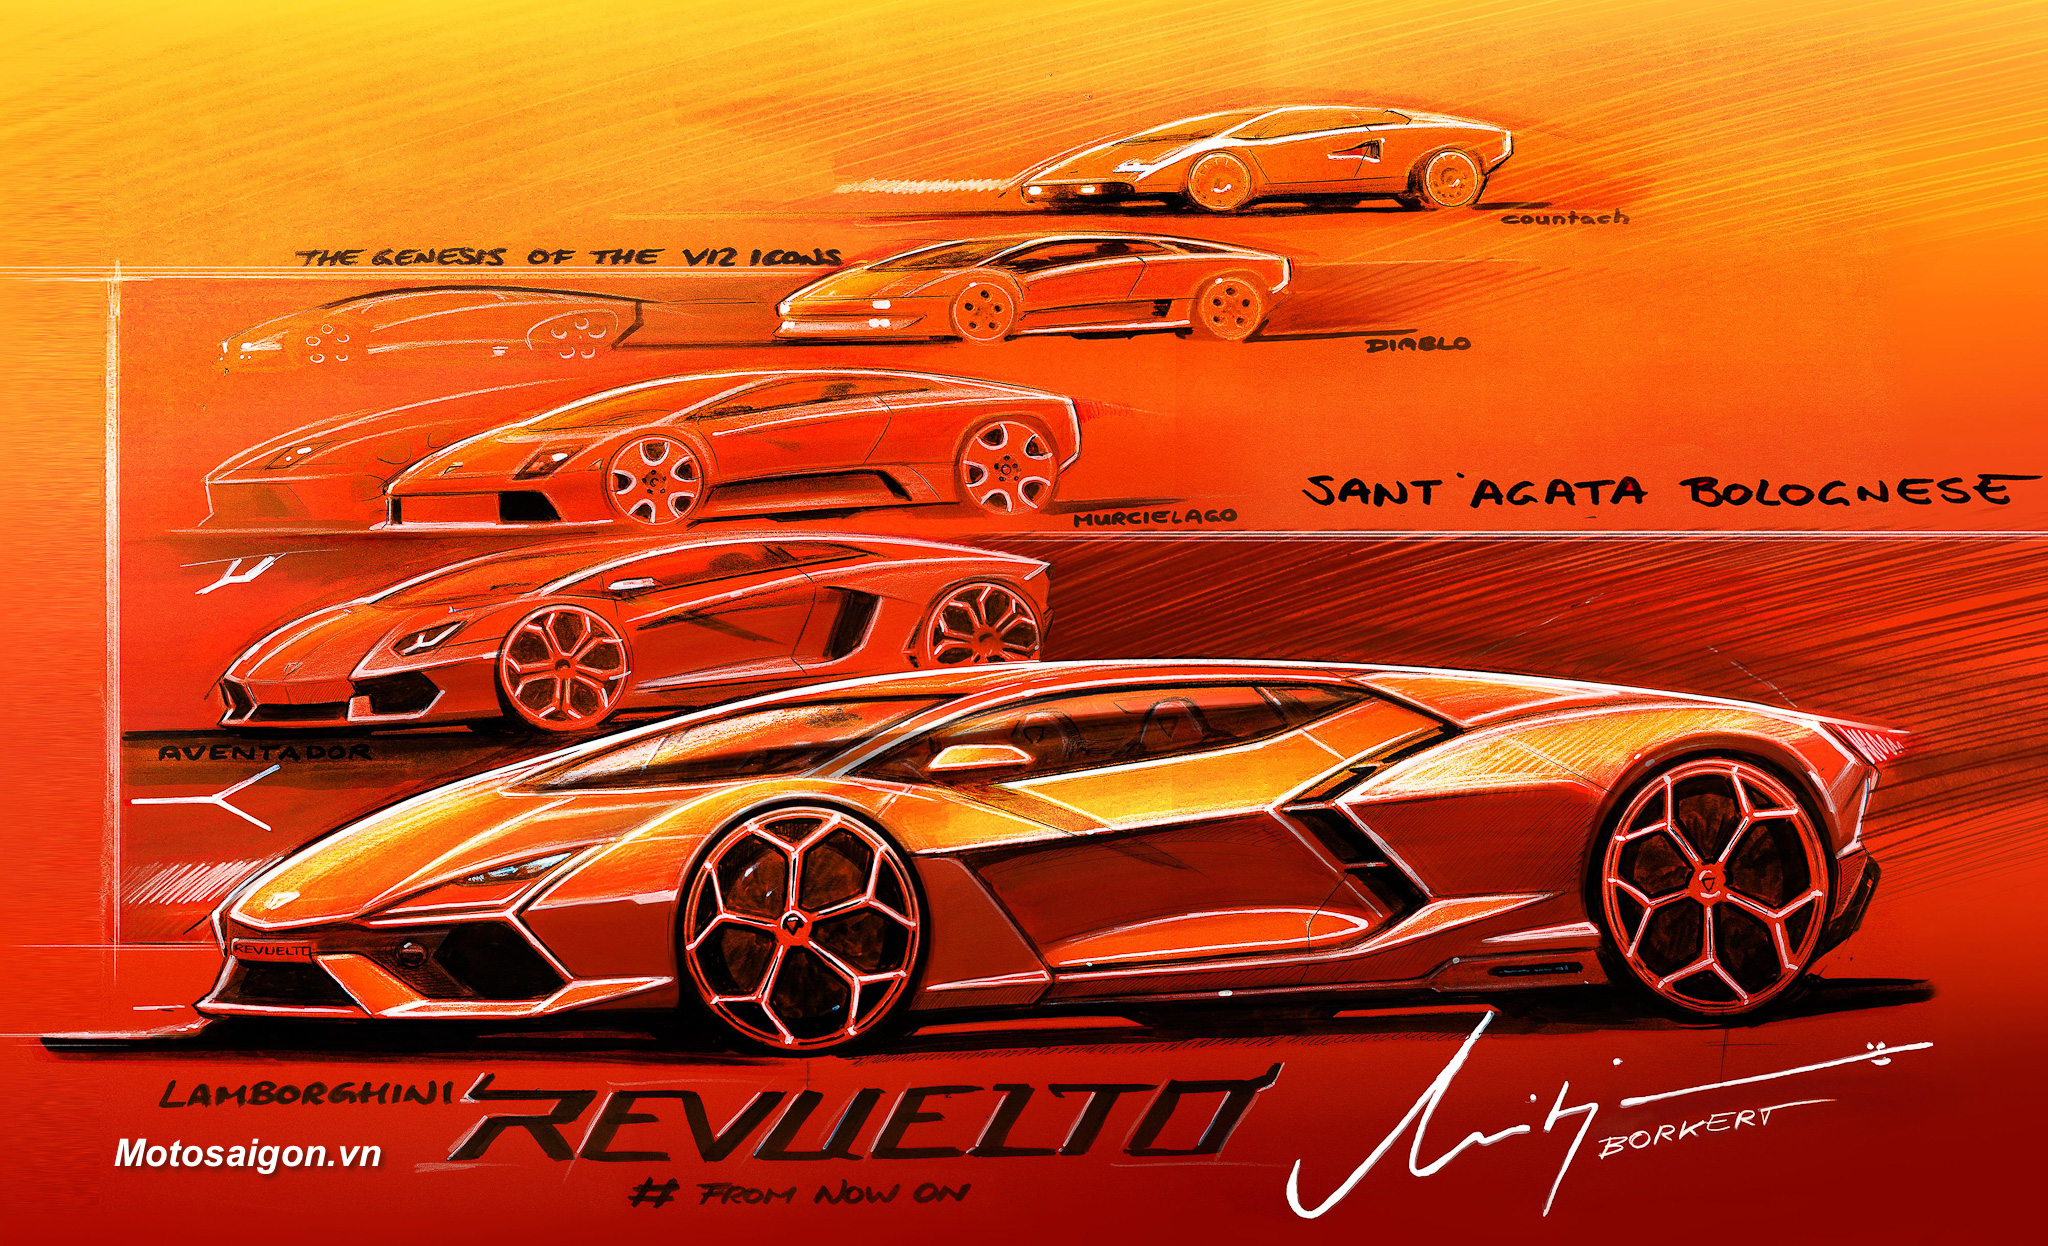 Lamborghini Revuelto – Siêu xe thể thao V12 hybrid HPEV đầu tiên của thương hiệu